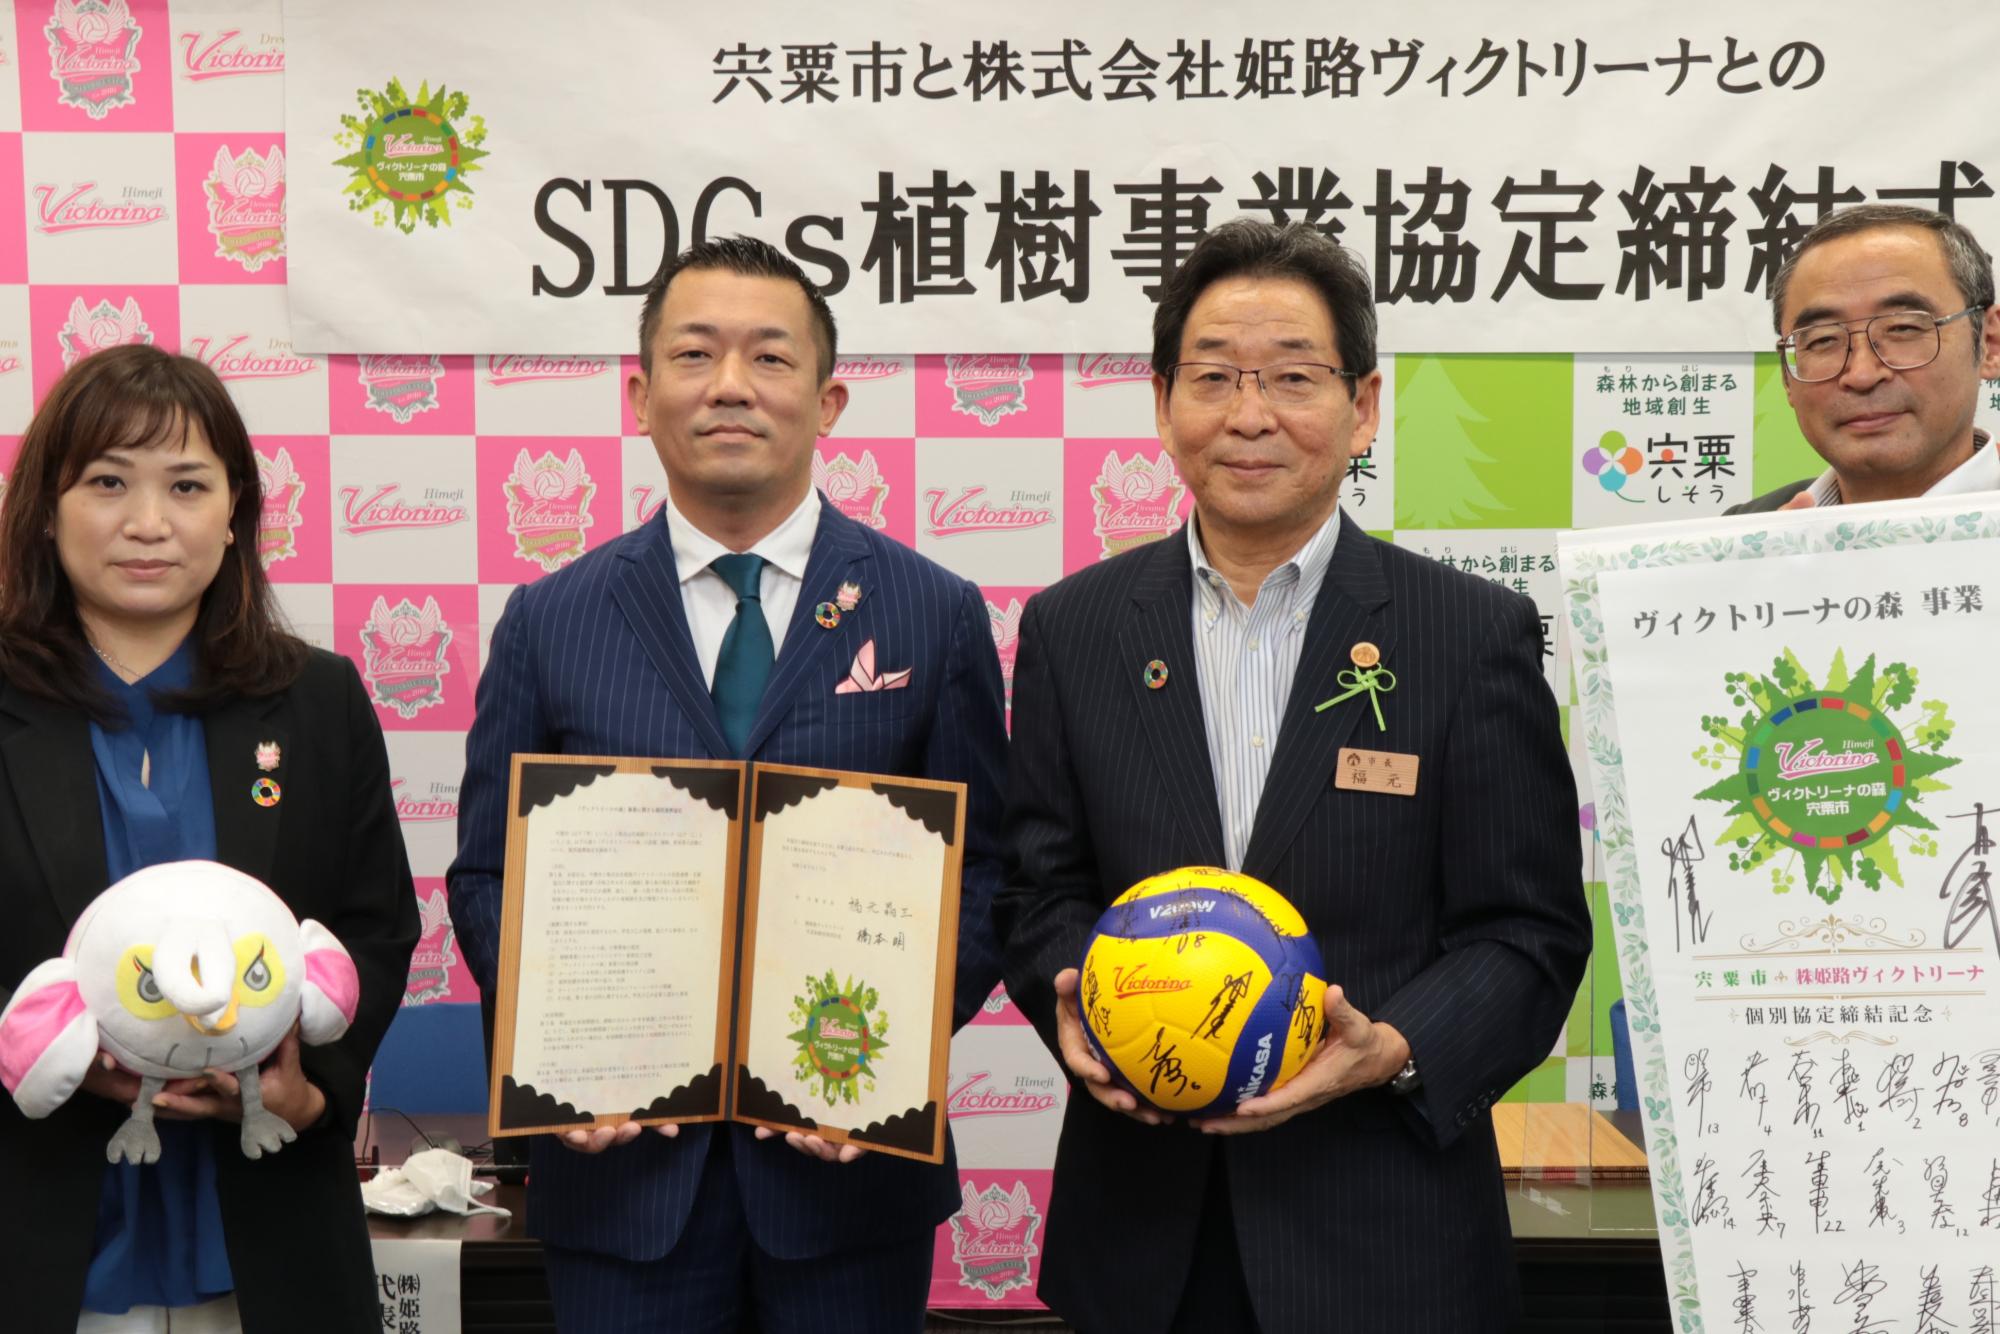 左から姫路ヴィクトリーナの竹内さんと橋本社長、福元市長と富田副市長が並んでサインをした協定締結書を披露している写真